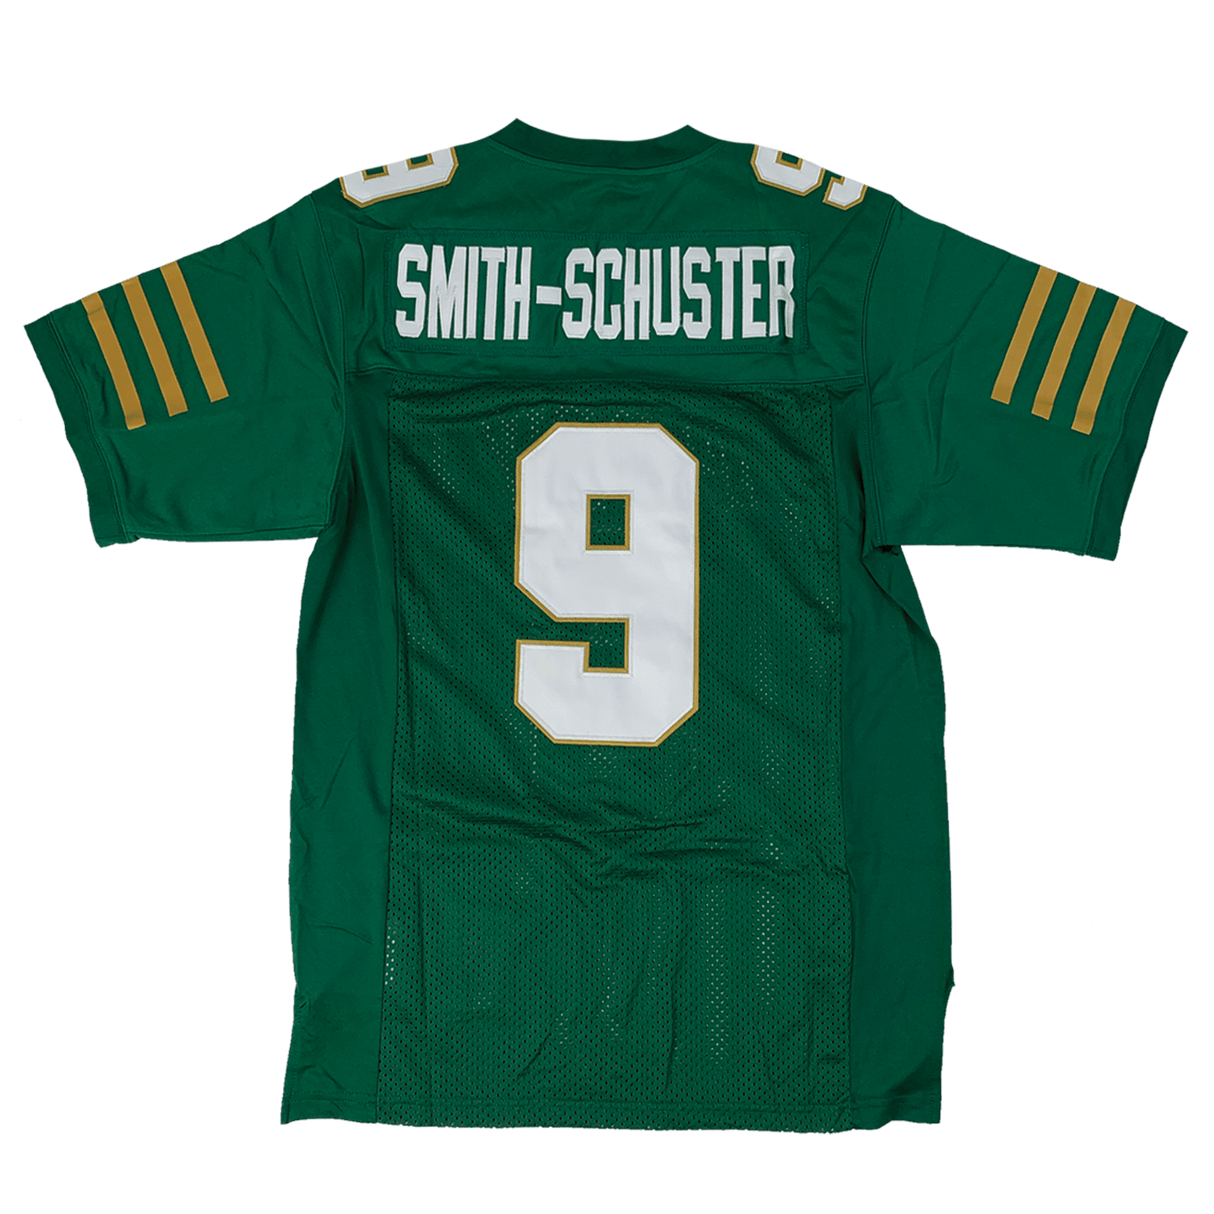 JuJu Smith-Schuster Green High School Football Jersey - Allstarelite.com